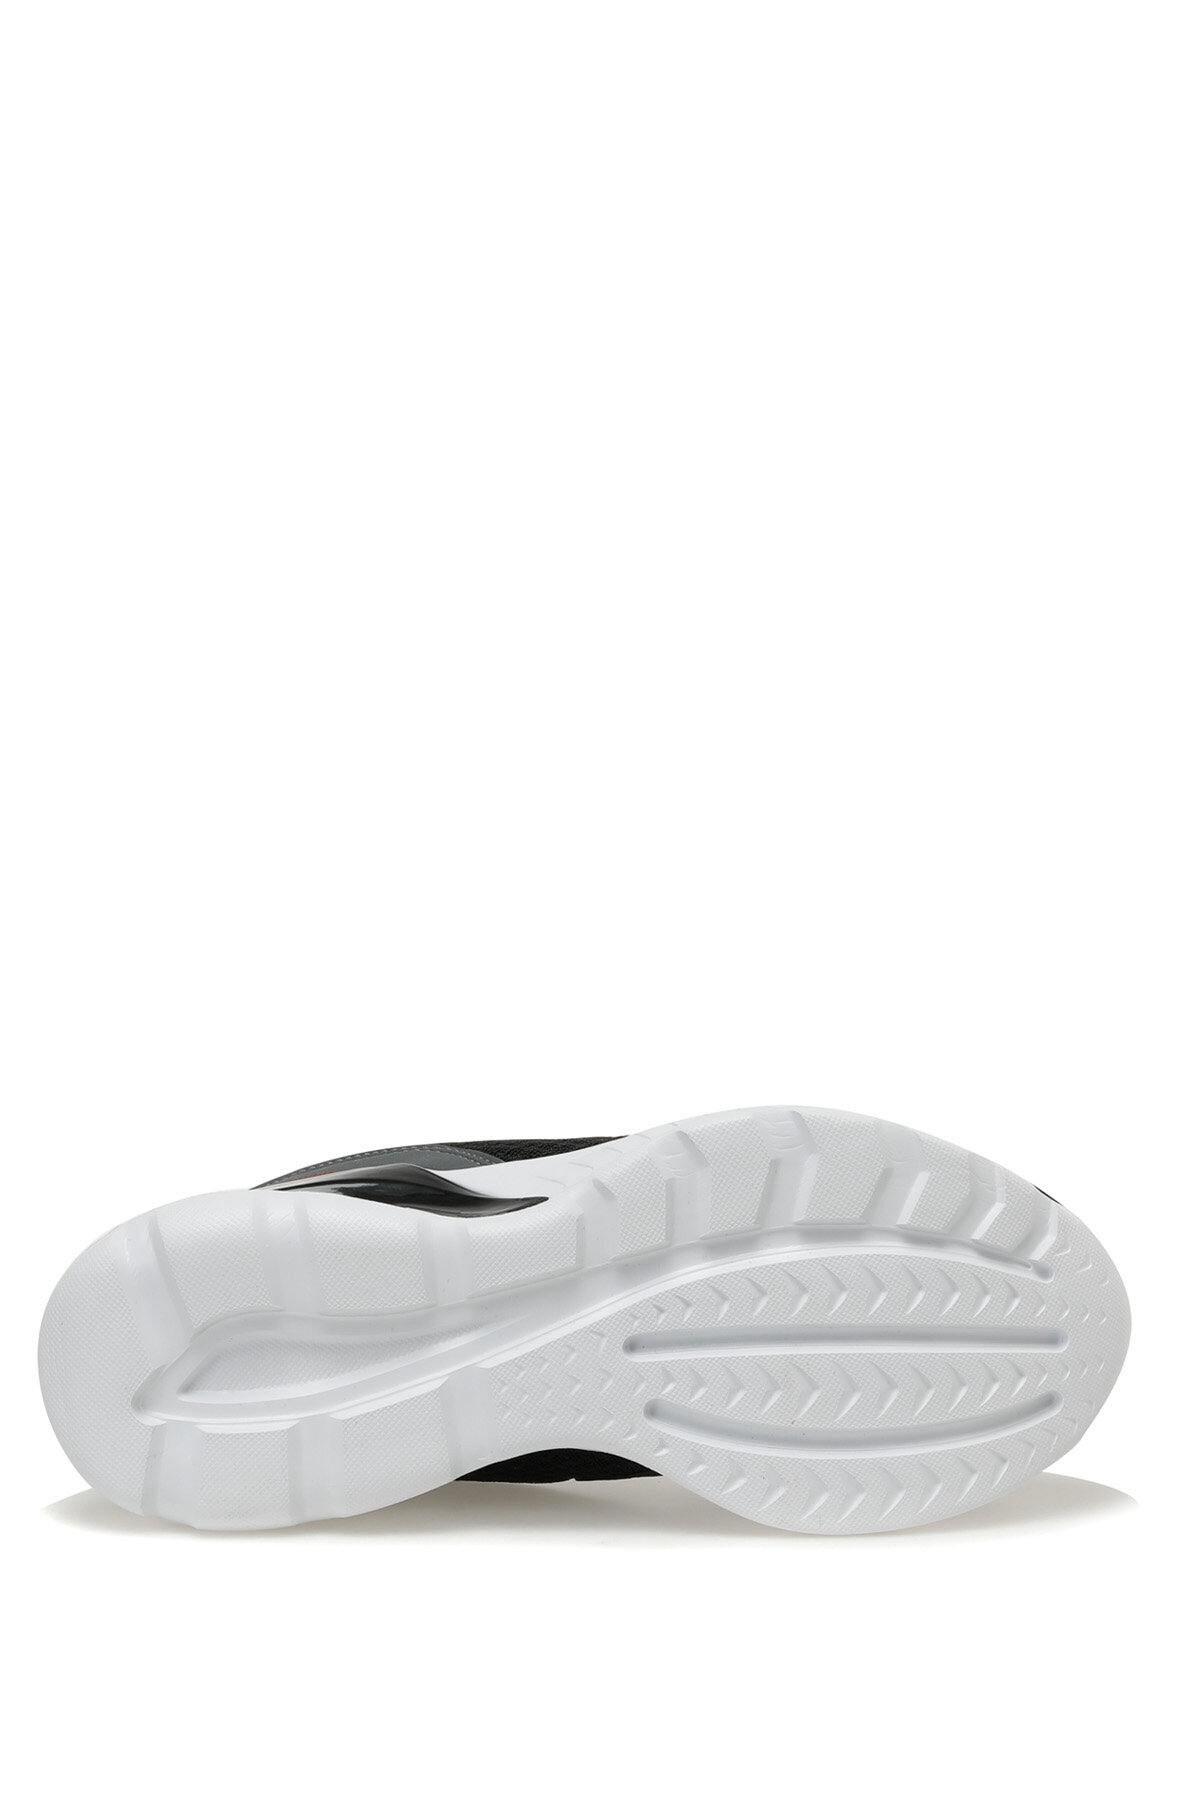 کفش اسپورت مردانه کینتیکس مدل Reflex TX رنگ مشکی